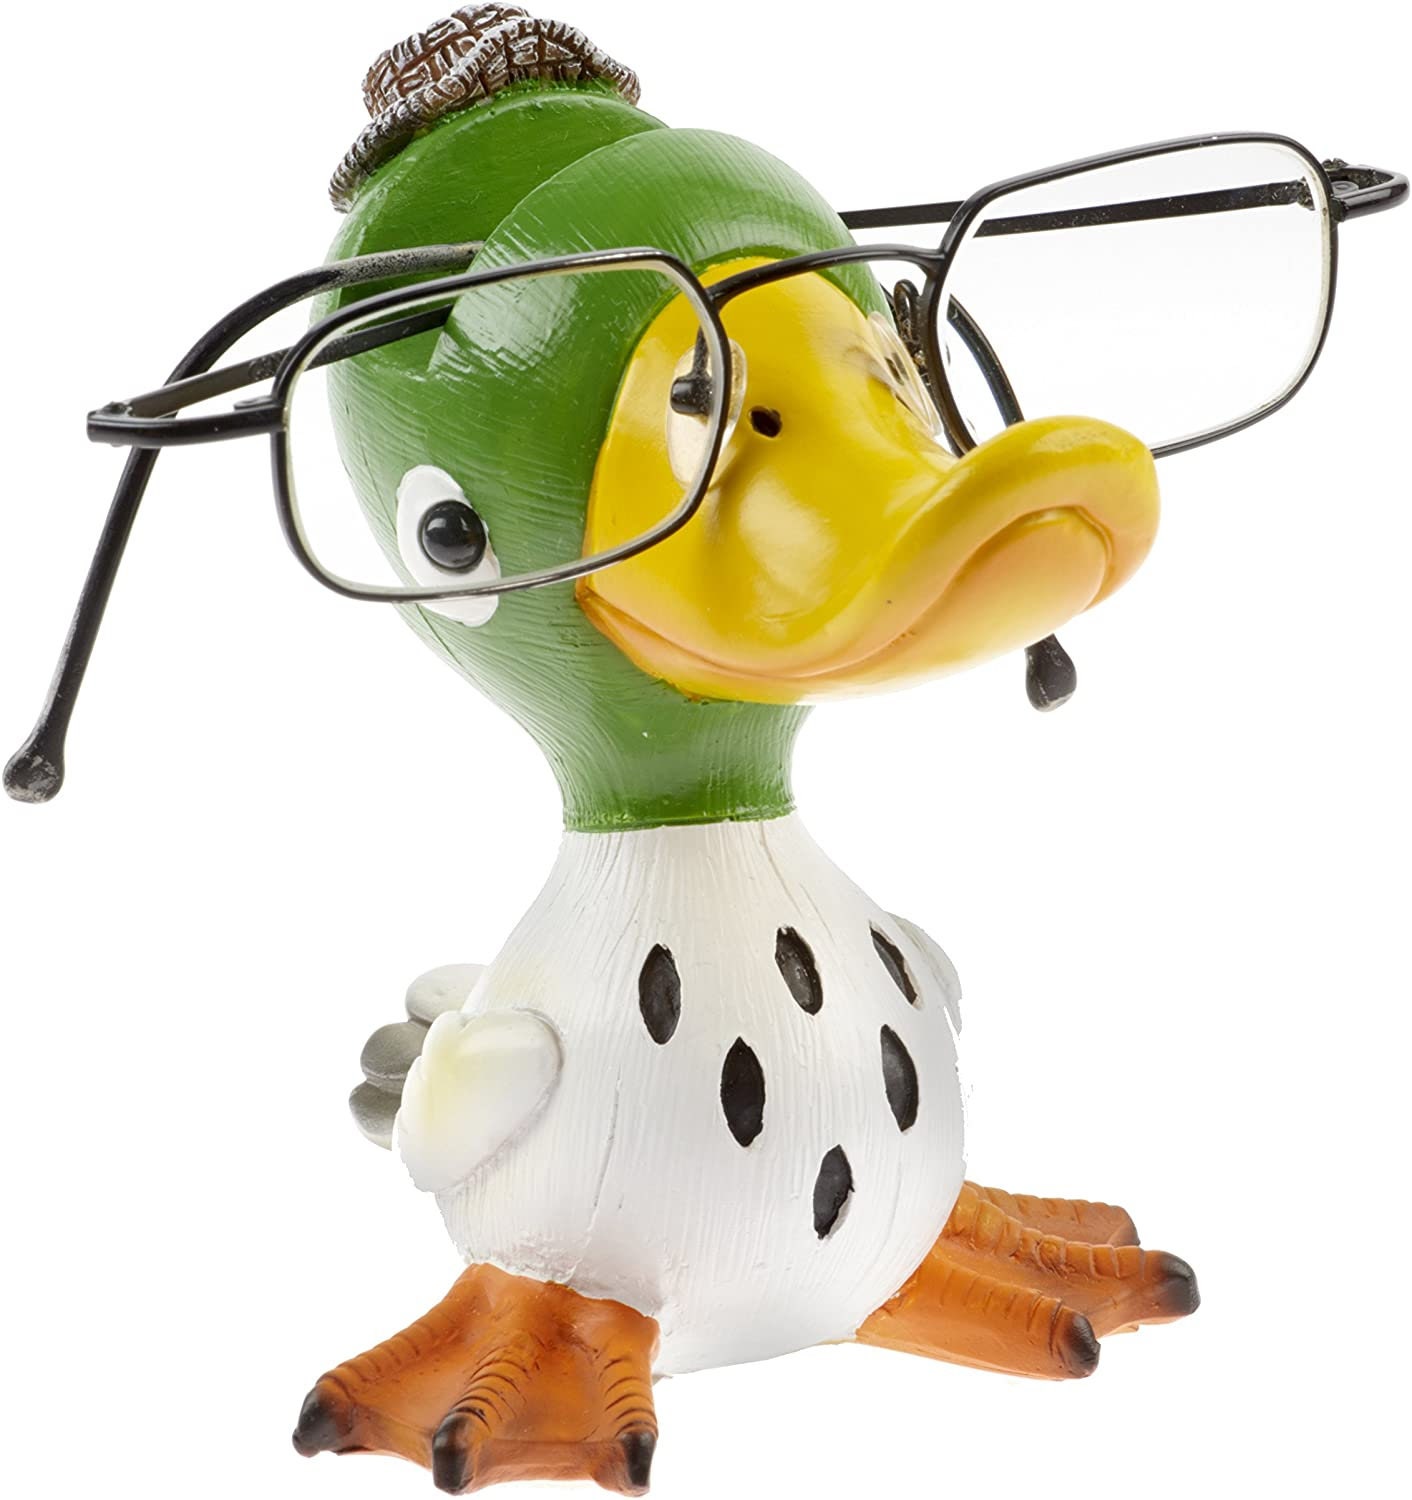 Duck Bill Eyeglass Holder – ArtAkimbo